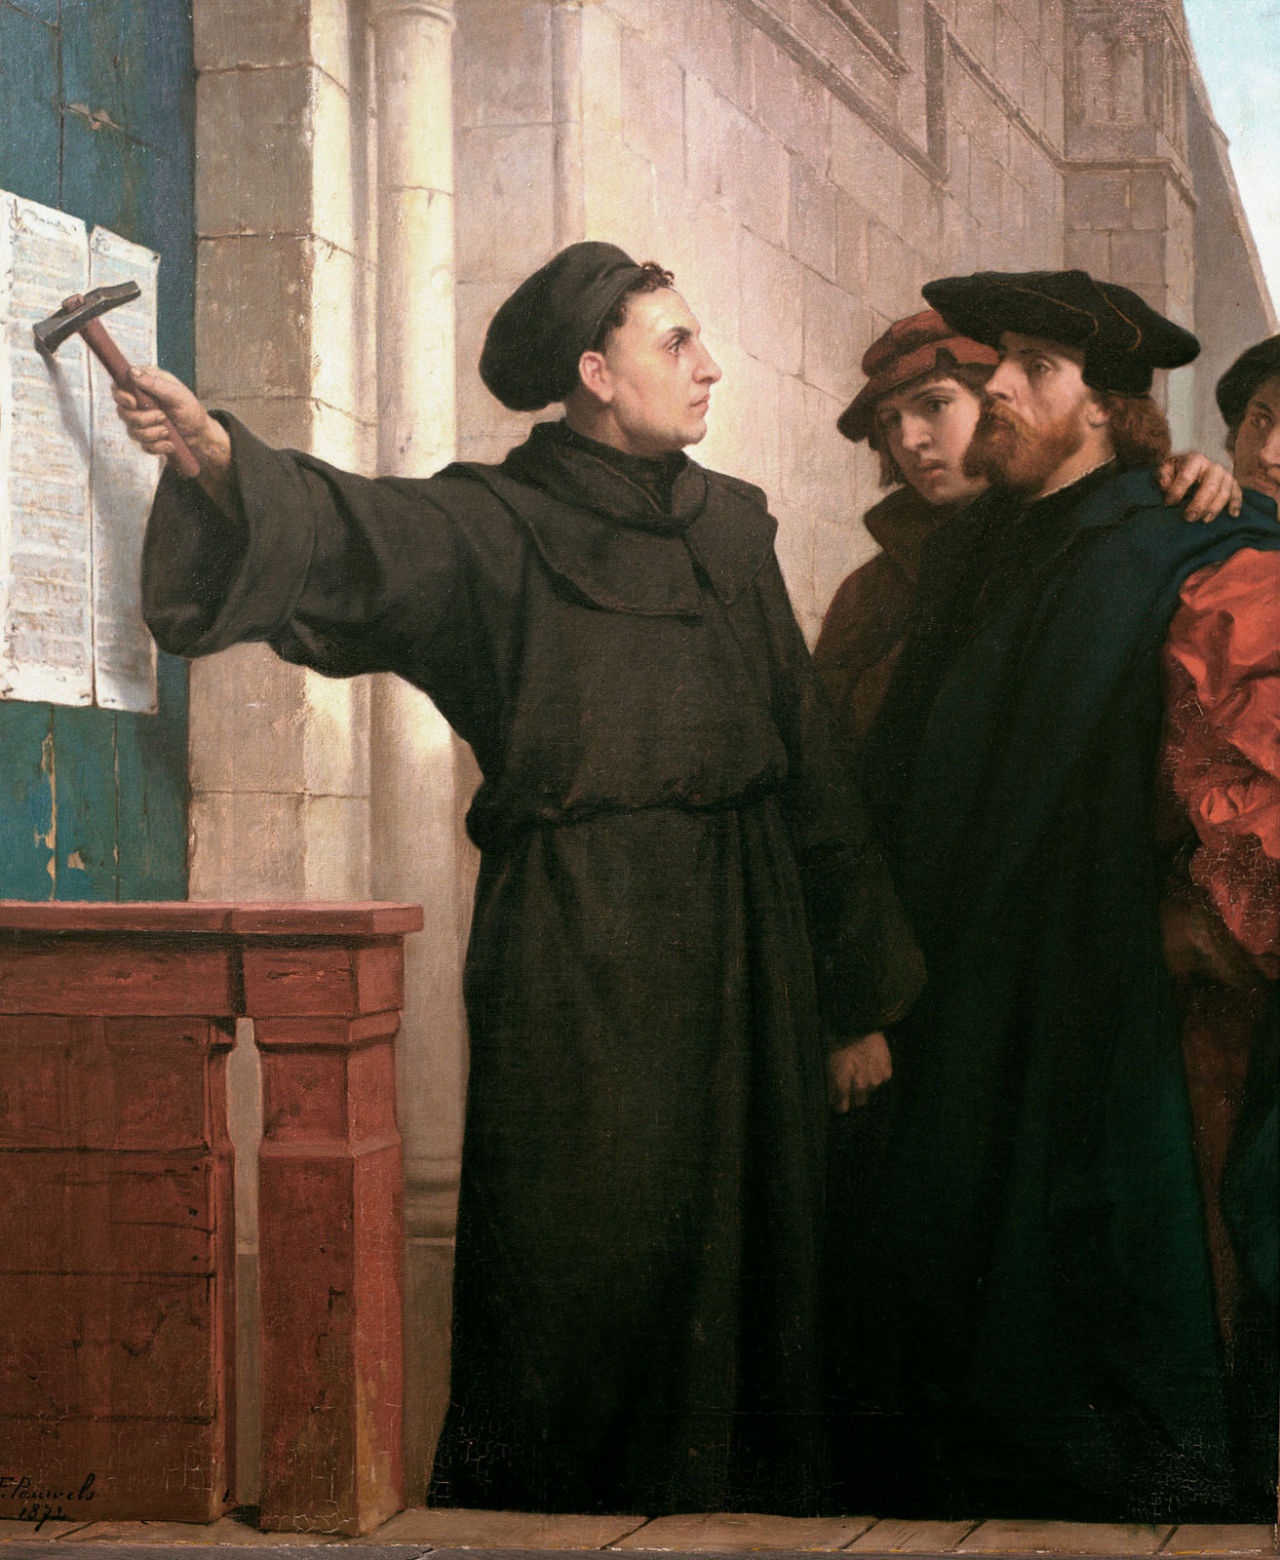 31 жовтня 1517 року. Мартін Лютер власноруч прибиває на воротах Замкової церкви в Віттенберзі свої «95 тез» проти індульгенцій. Історики, щоправда, сумніваються, у достовірності цього факту. Картина художника Фердинанда Паувелса, 1872 рік.